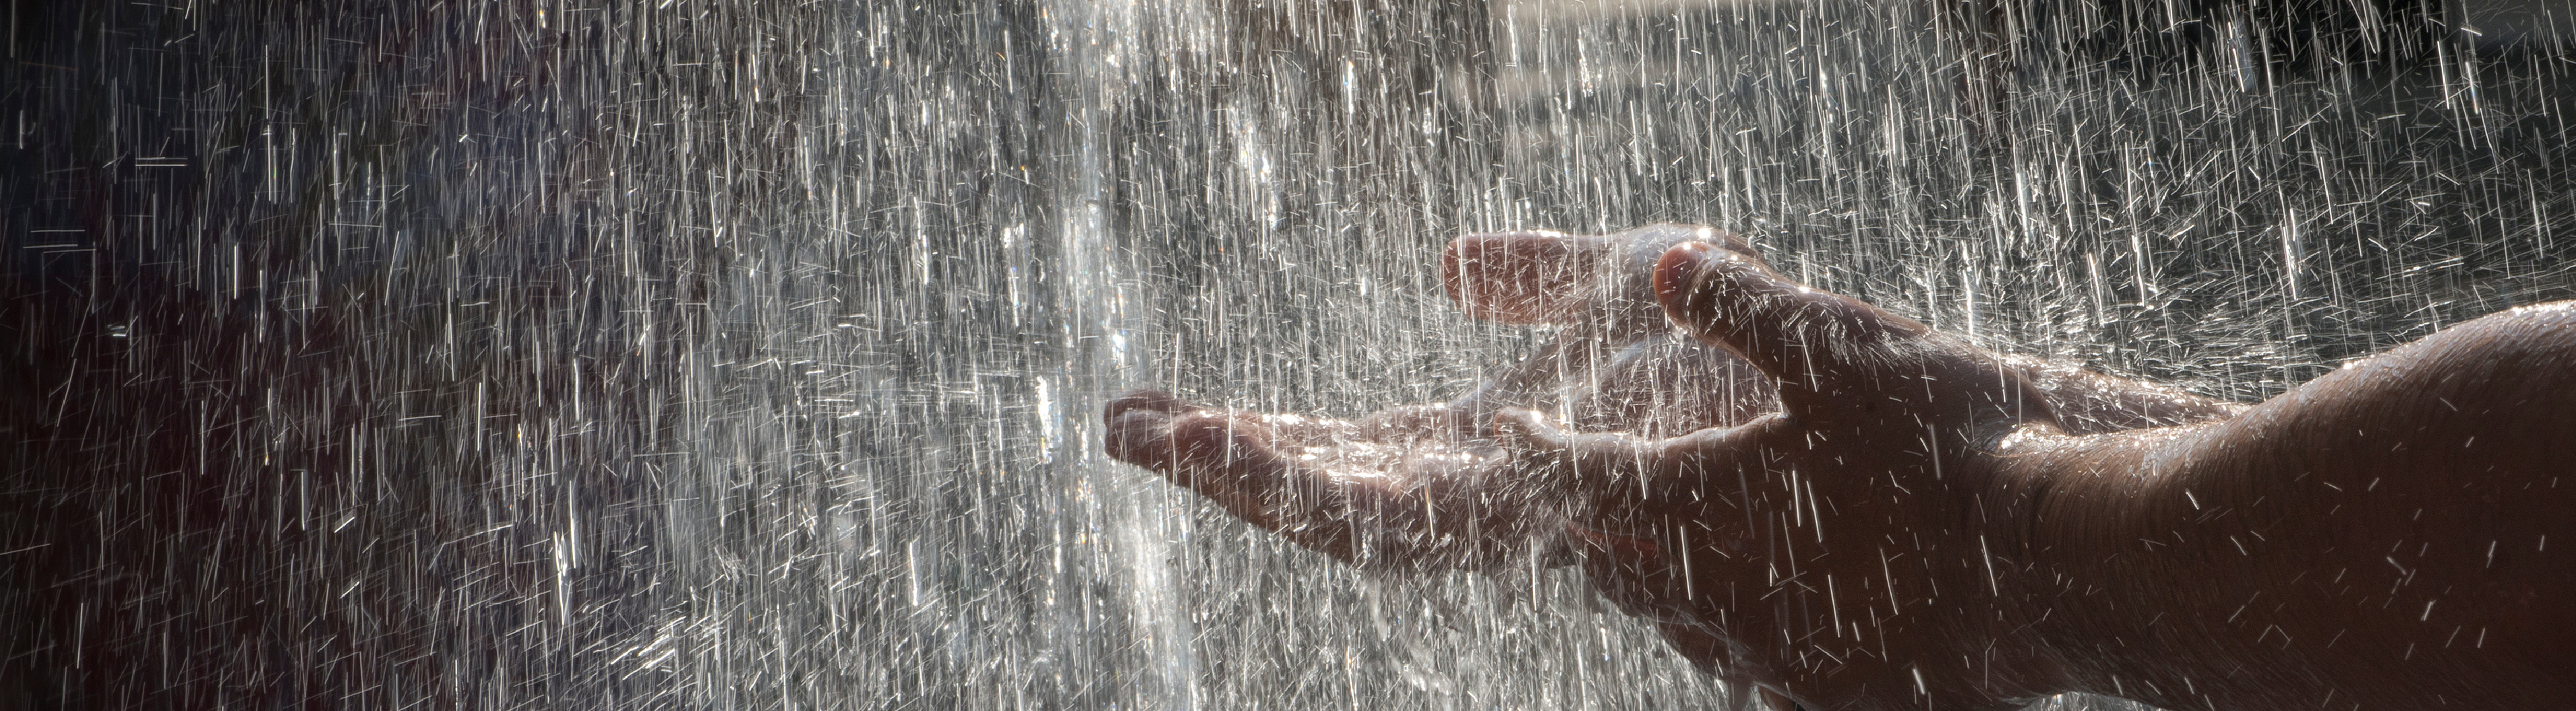 Hands in the rain